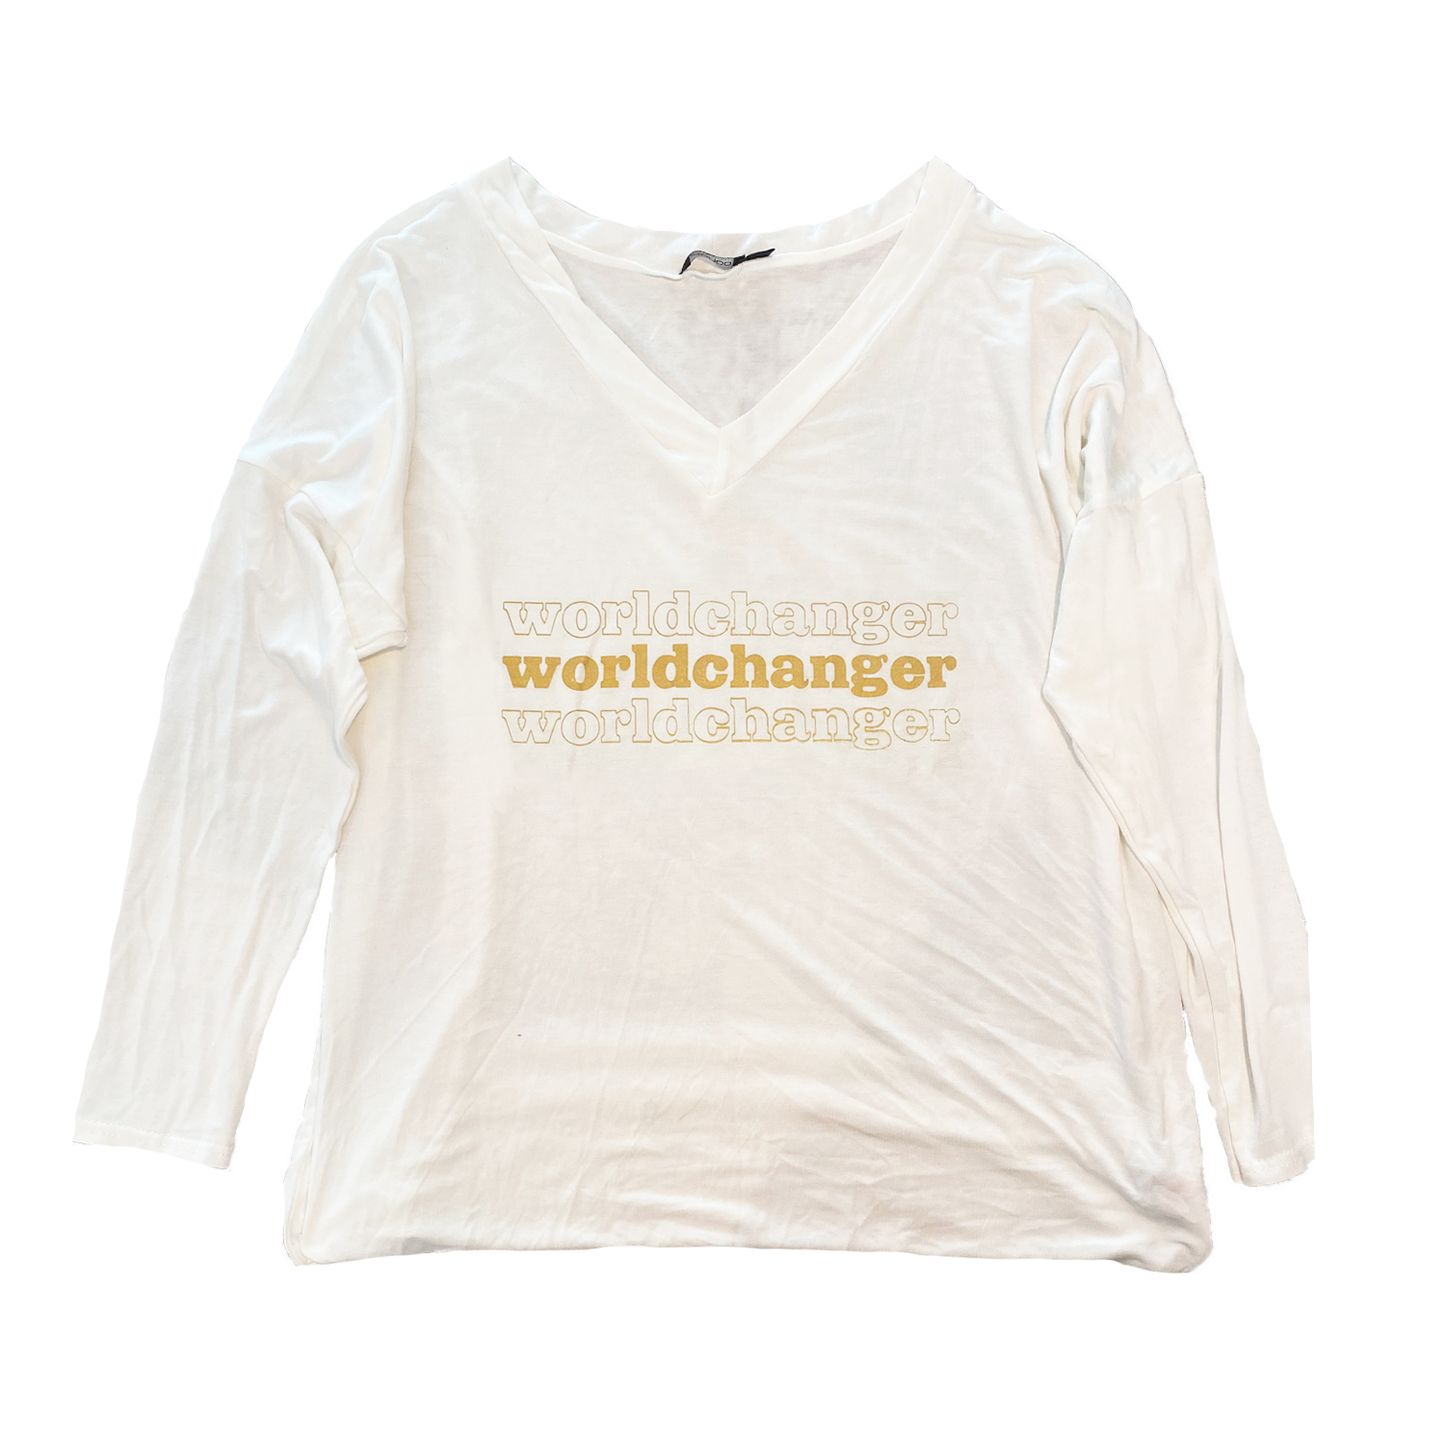 Worldchanger "Slouchy" Women's Shirt